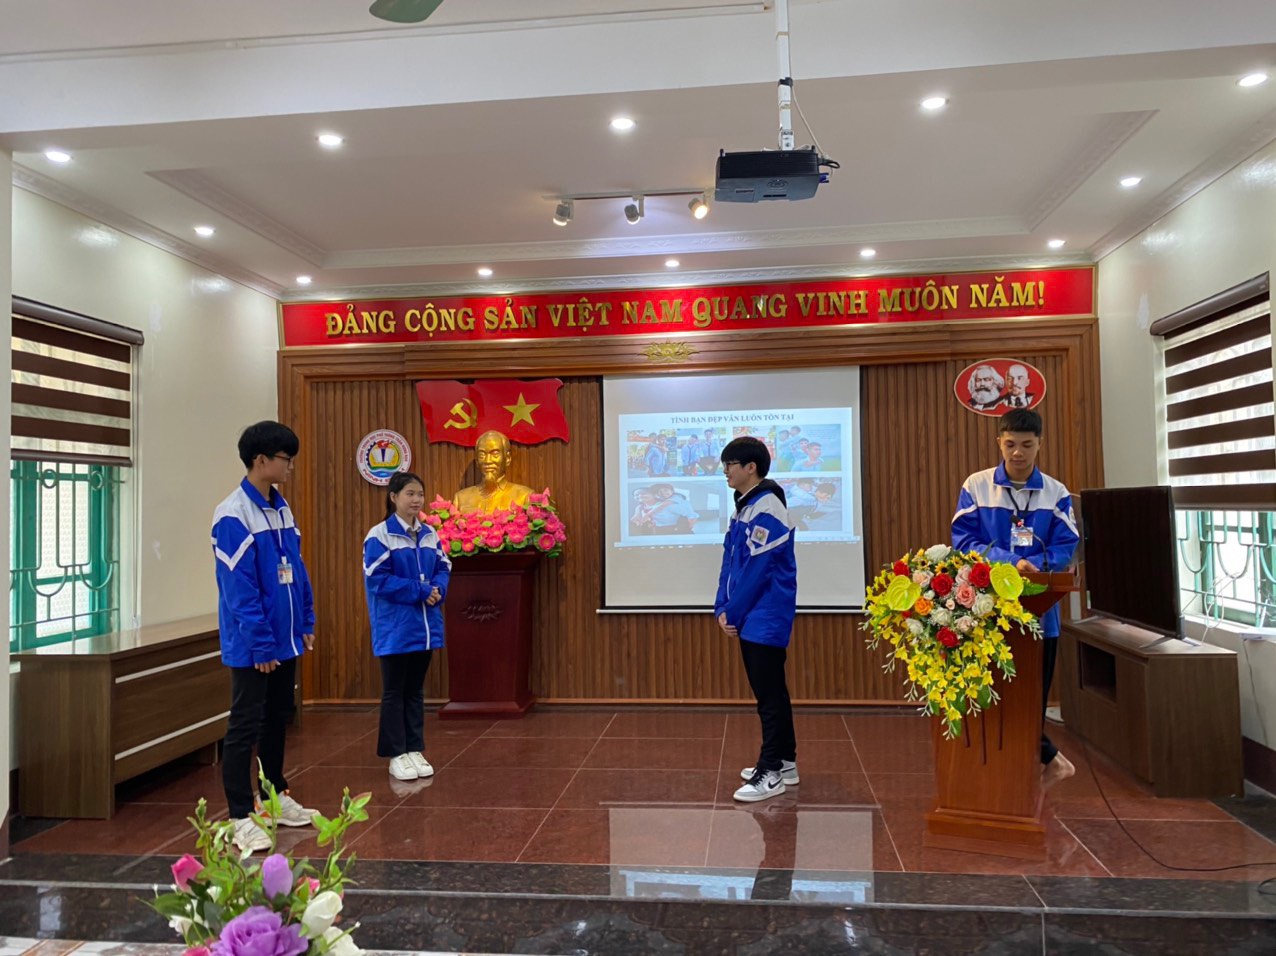 Đoàn trường THPT Trần Hưng Đạo, thành phố Ninh Bình tổ chức Diễn đàn “Xây dựng tình bạn đẹp - nói không với bạo lực học đường”